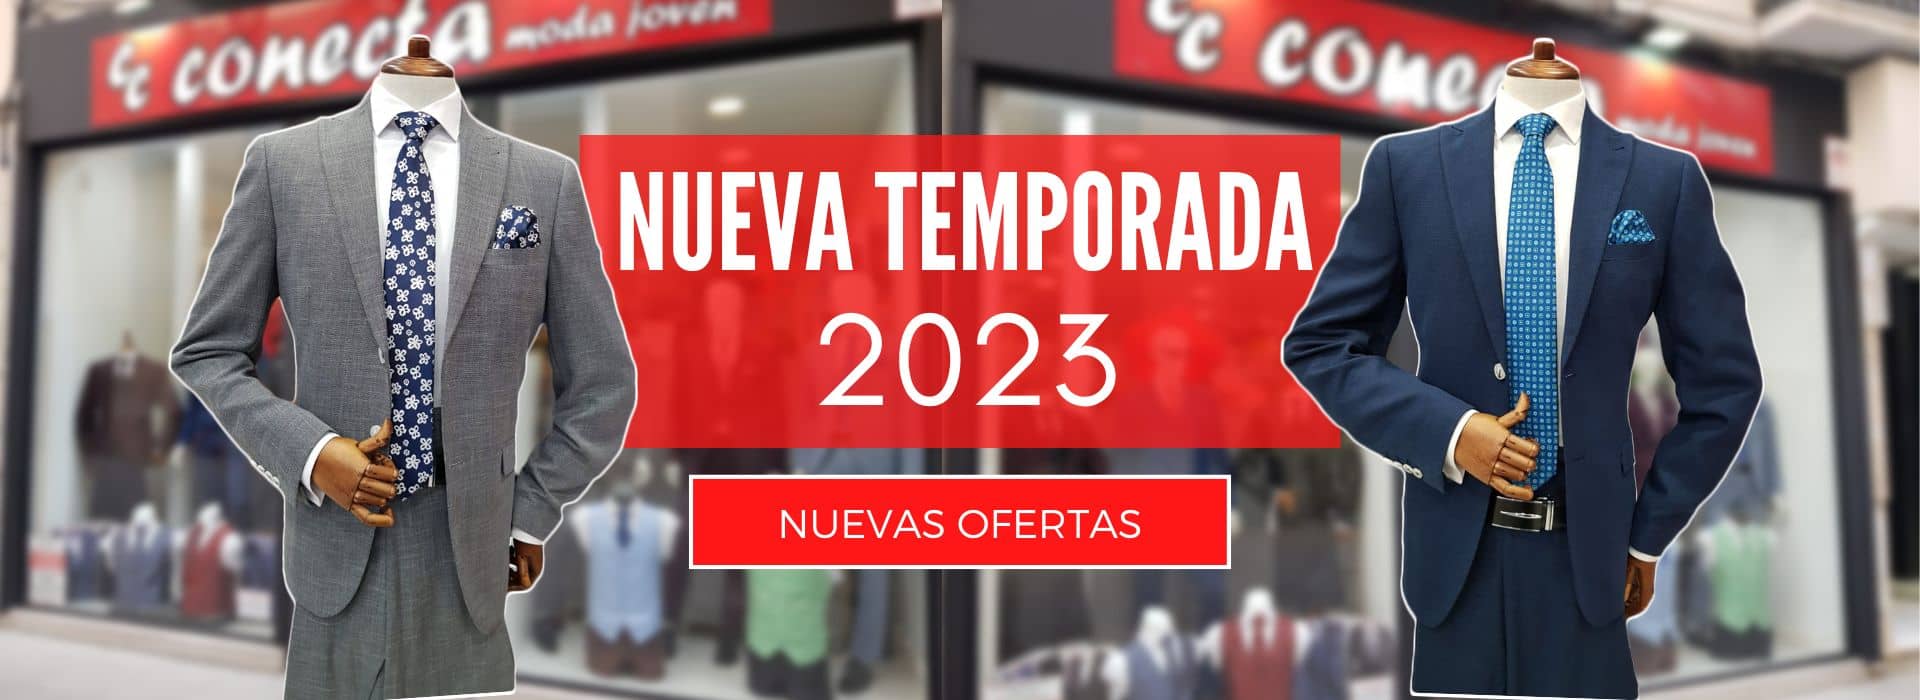 Nueva Temporada 2023 - Conecta Moda Joven Trajes y ropa de hombre en Granada